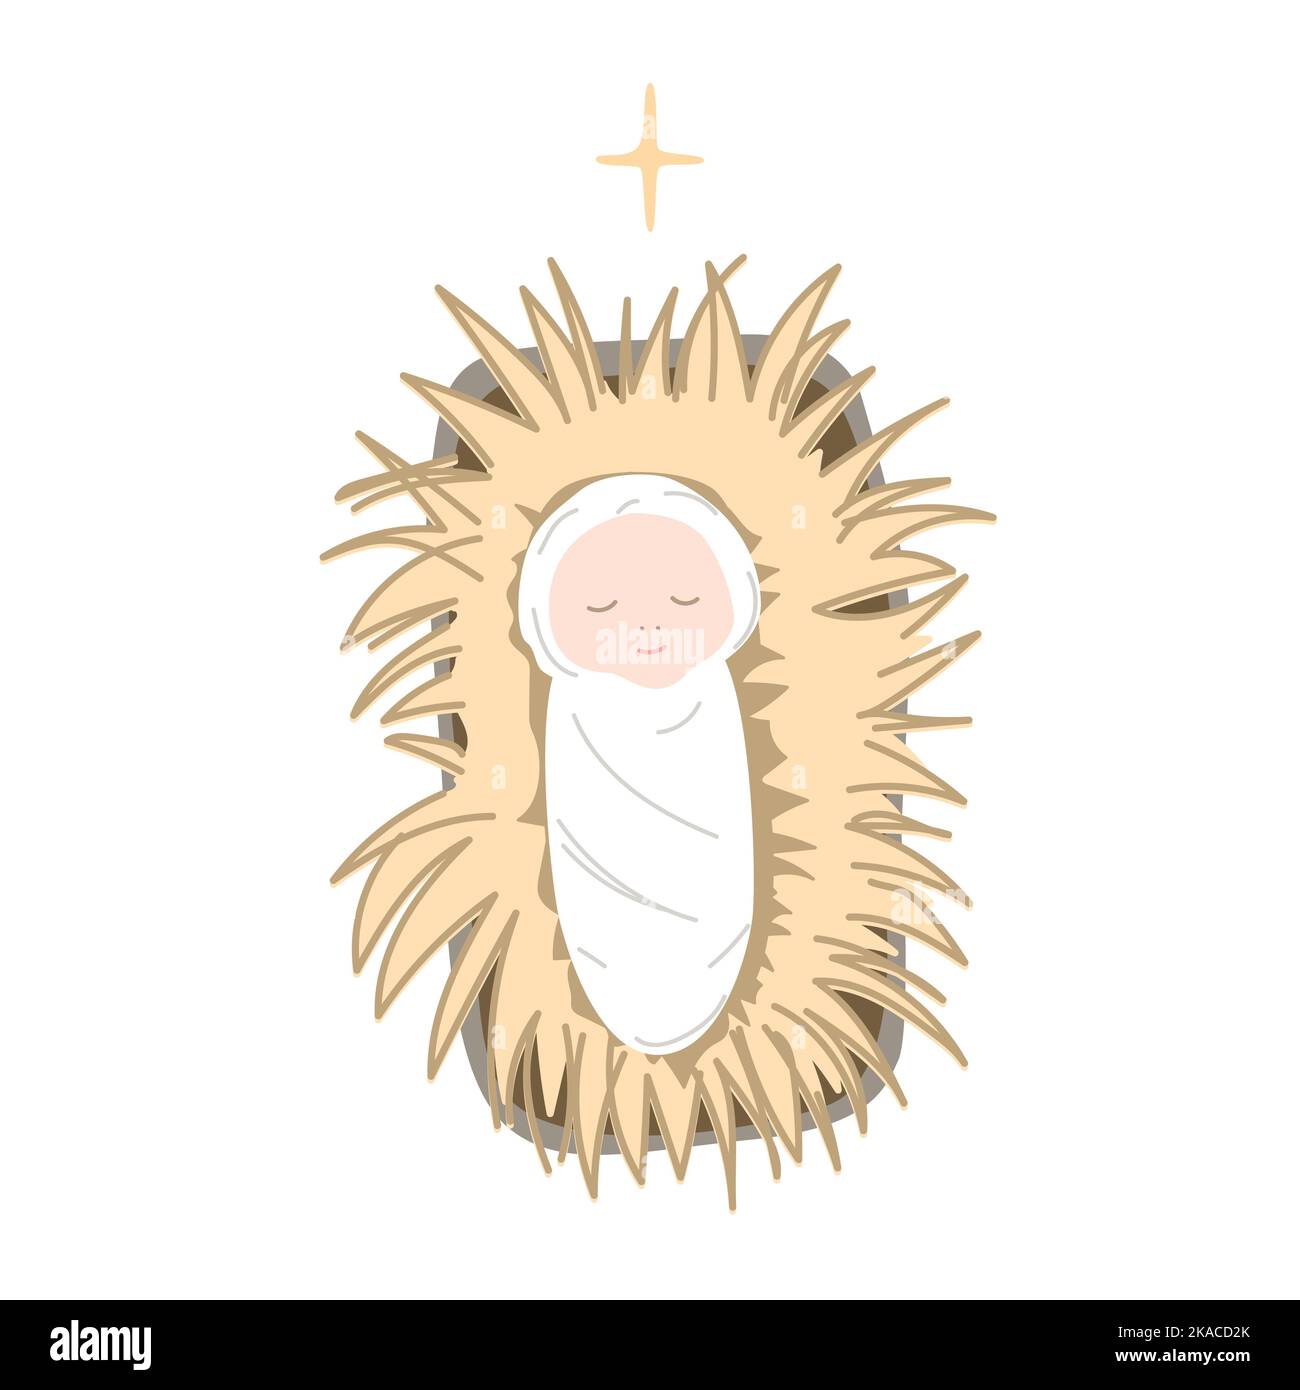 Jesuskind liegt auf dem Heu in einer Krippe. Heilige Familie fröhliche Weihnachtsikone. Cartoon isolierte Vektorgrafik Stock Vektor